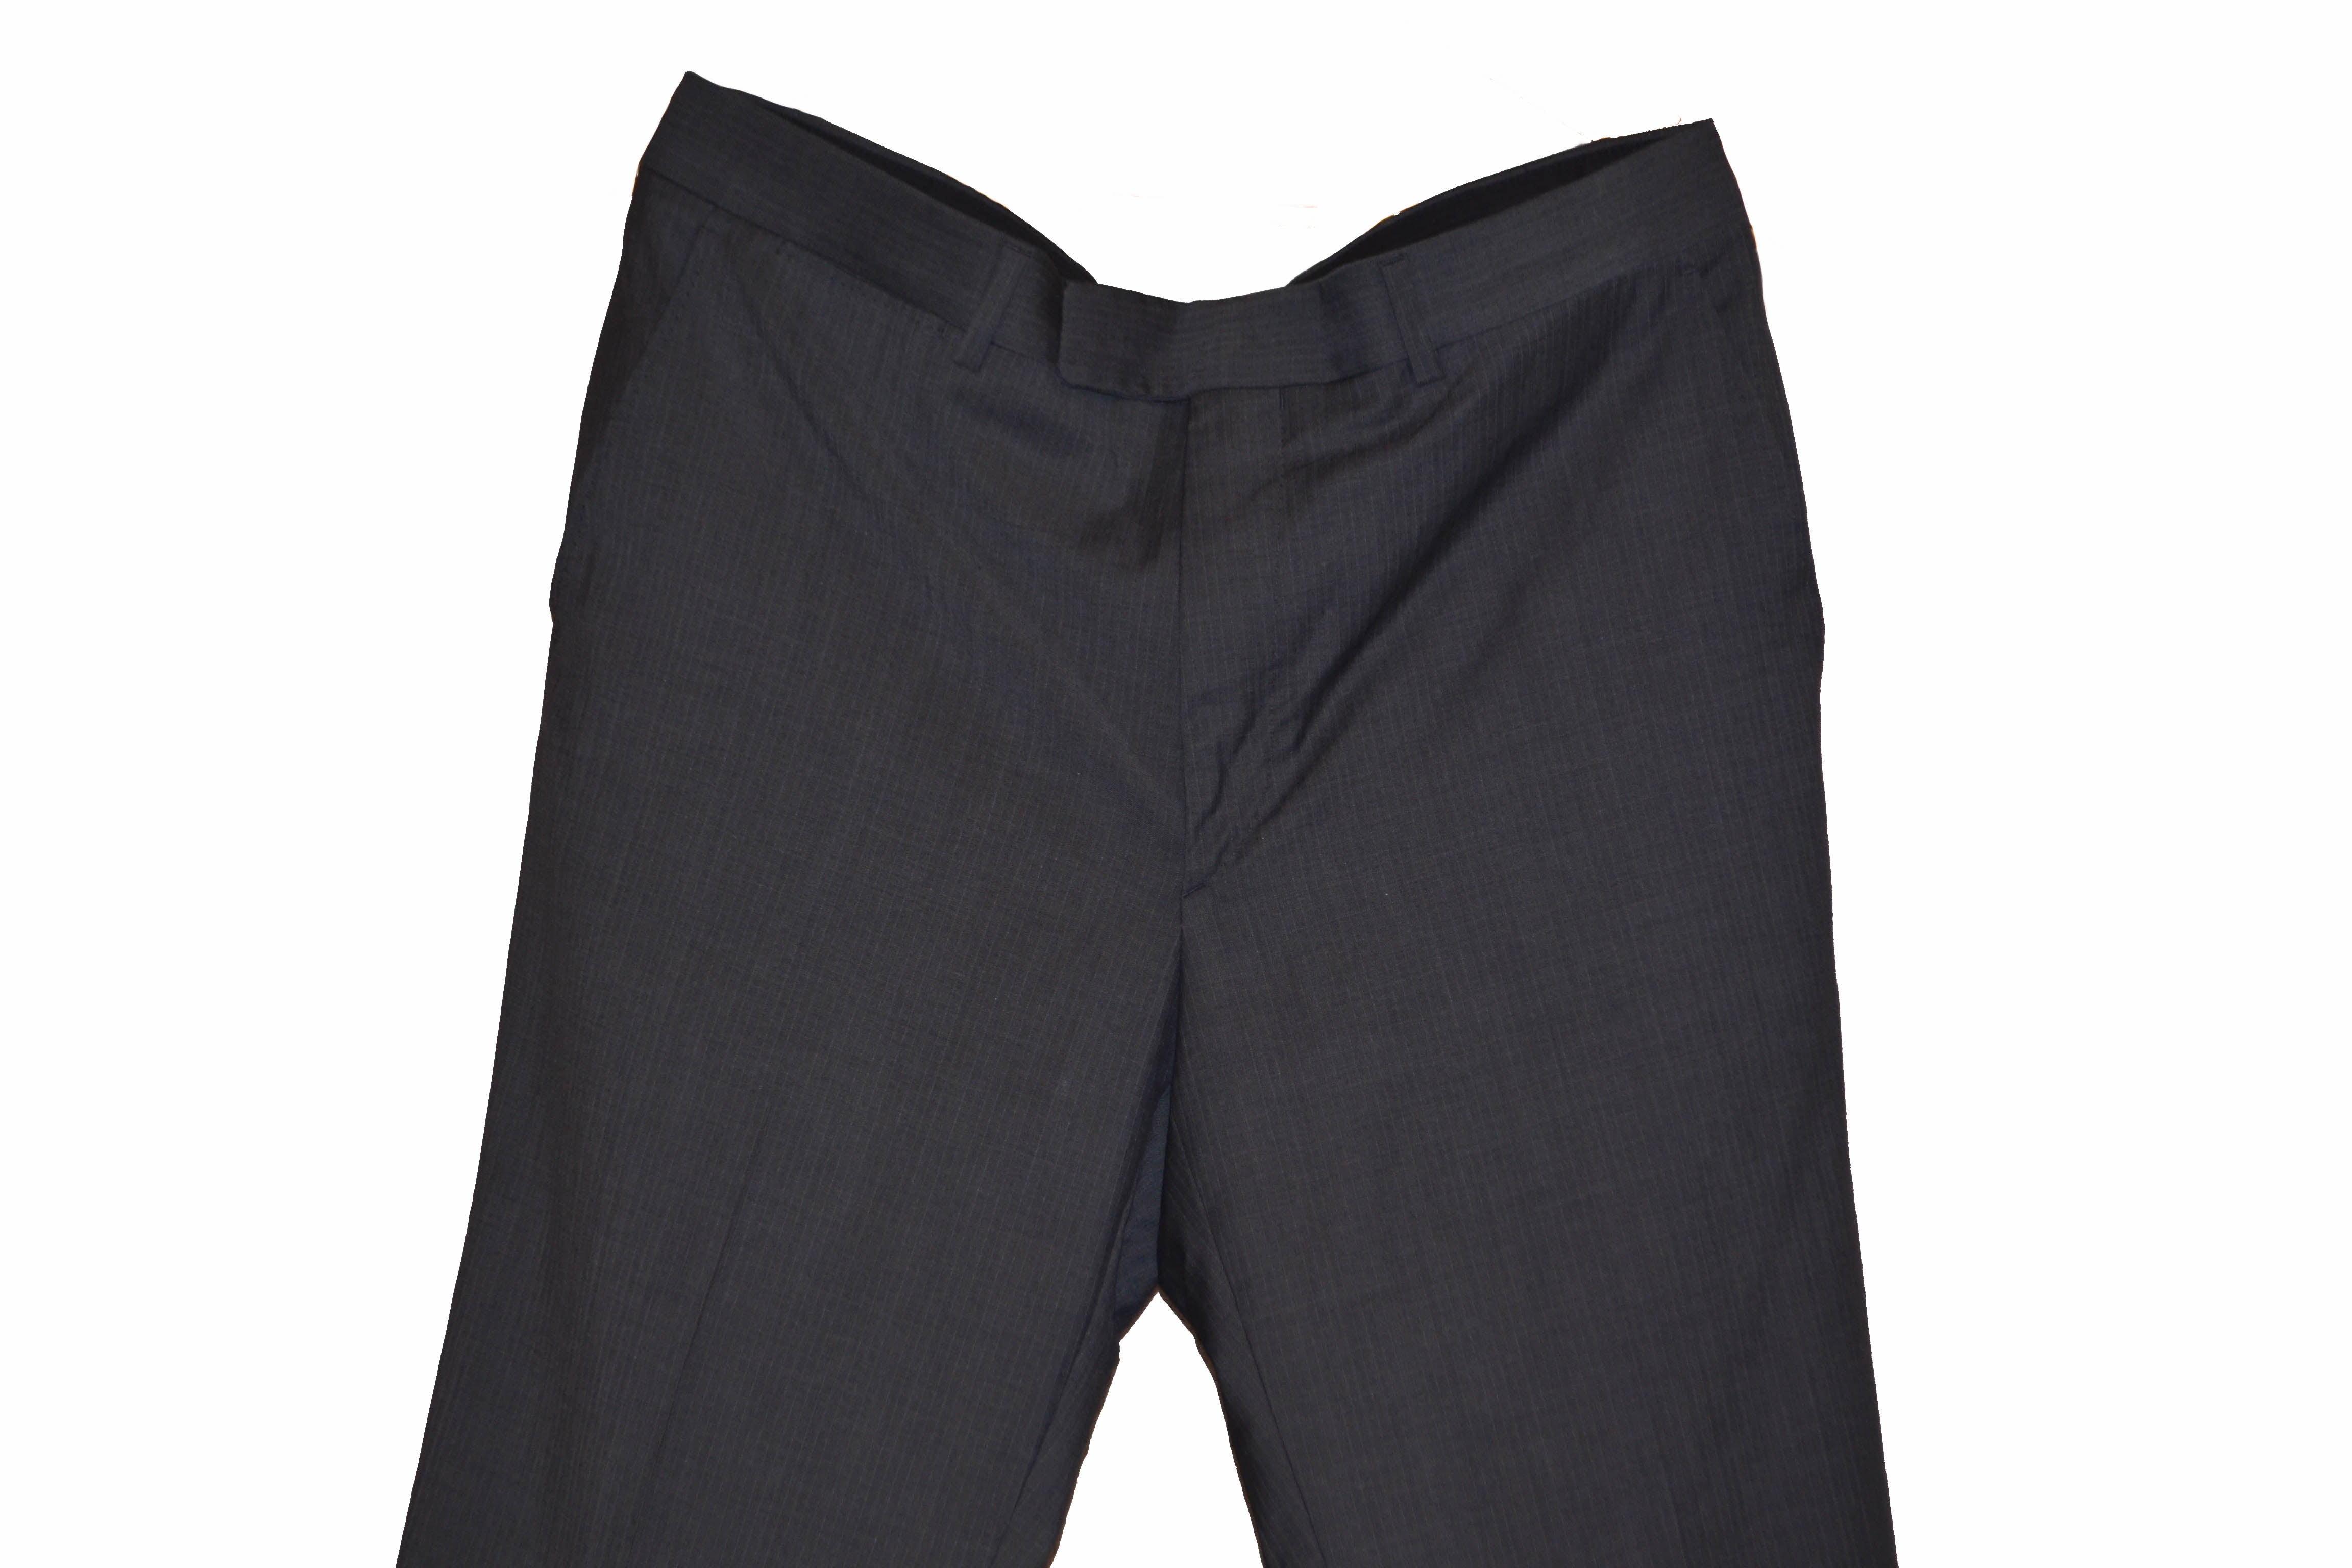 LOUIS VUITTON Cashmere Wool Logo Pants Size 40 Authentic Men Used